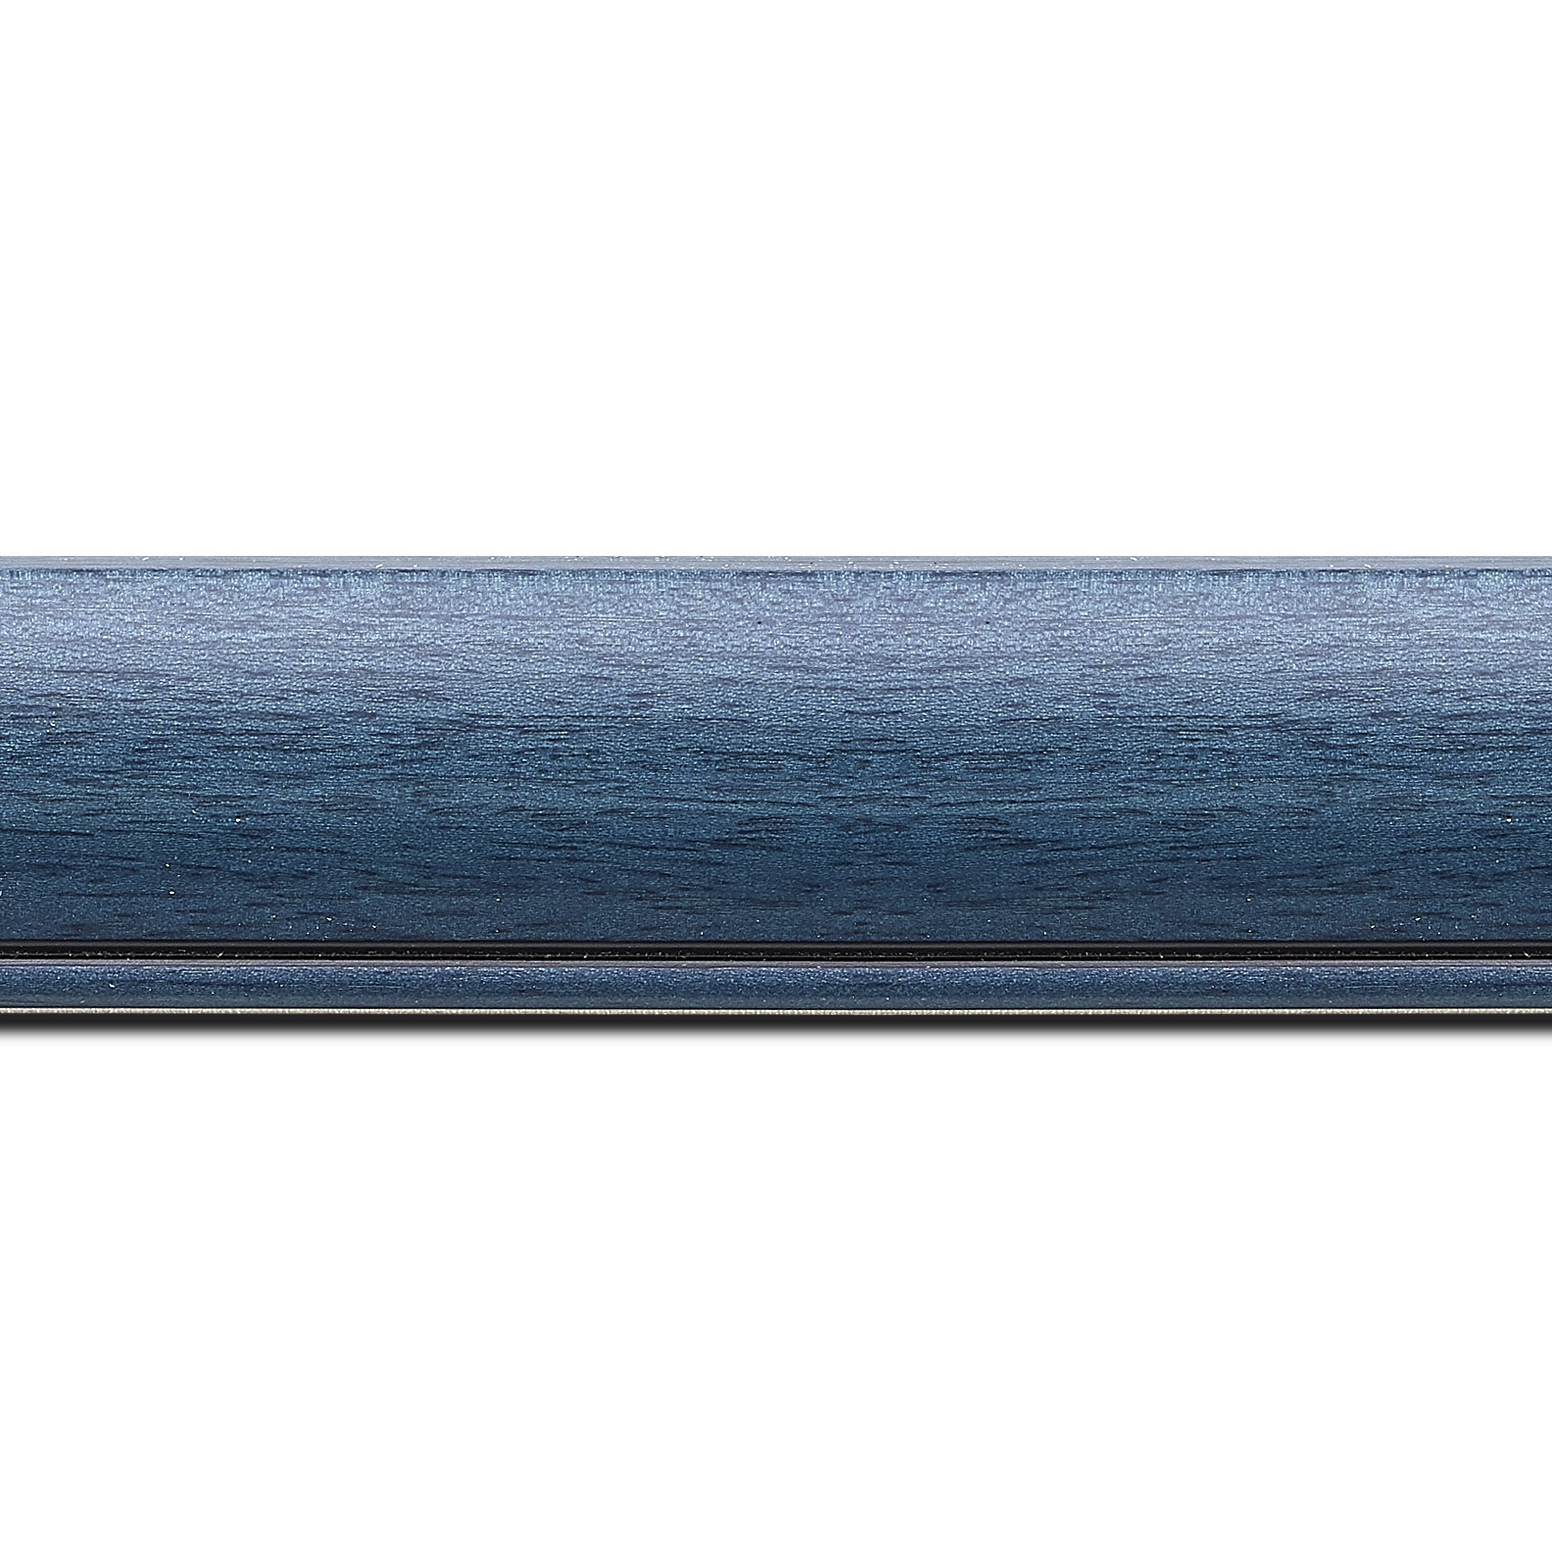 Pack par 12m, bois profil arrondi largeur 4.7cm couleur bleu cobalt satiné rehaussé d'un filet noir(longueur baguette pouvant varier entre 2.40m et 3m selon arrivage des bois)